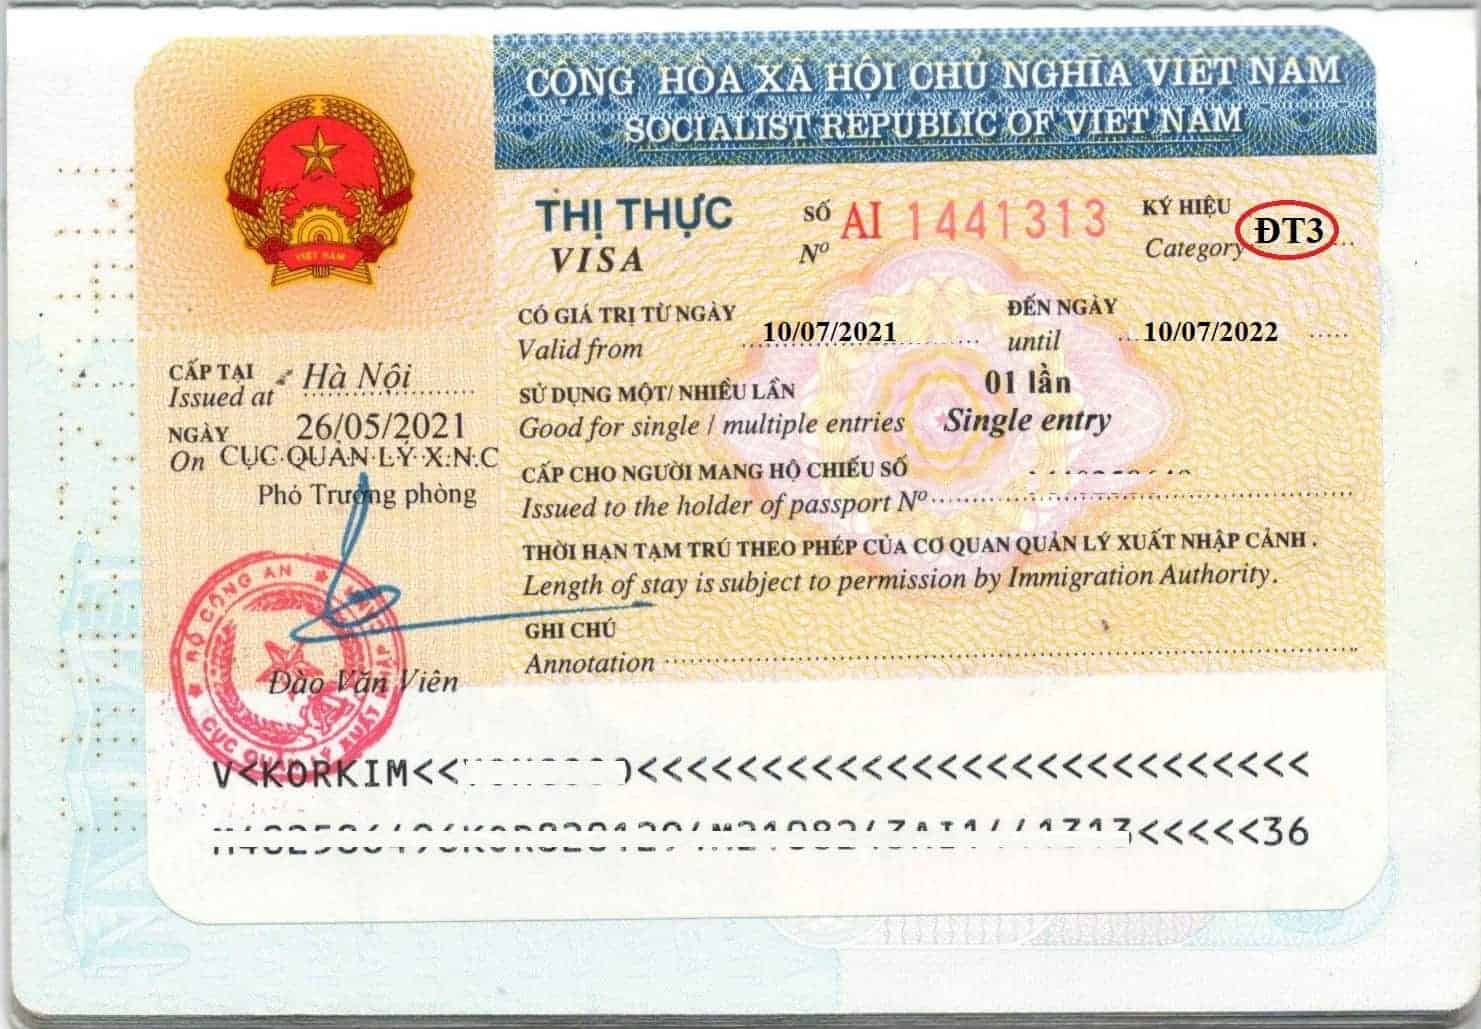 越南投資者 DT 簽證 – 您需要知道的一切